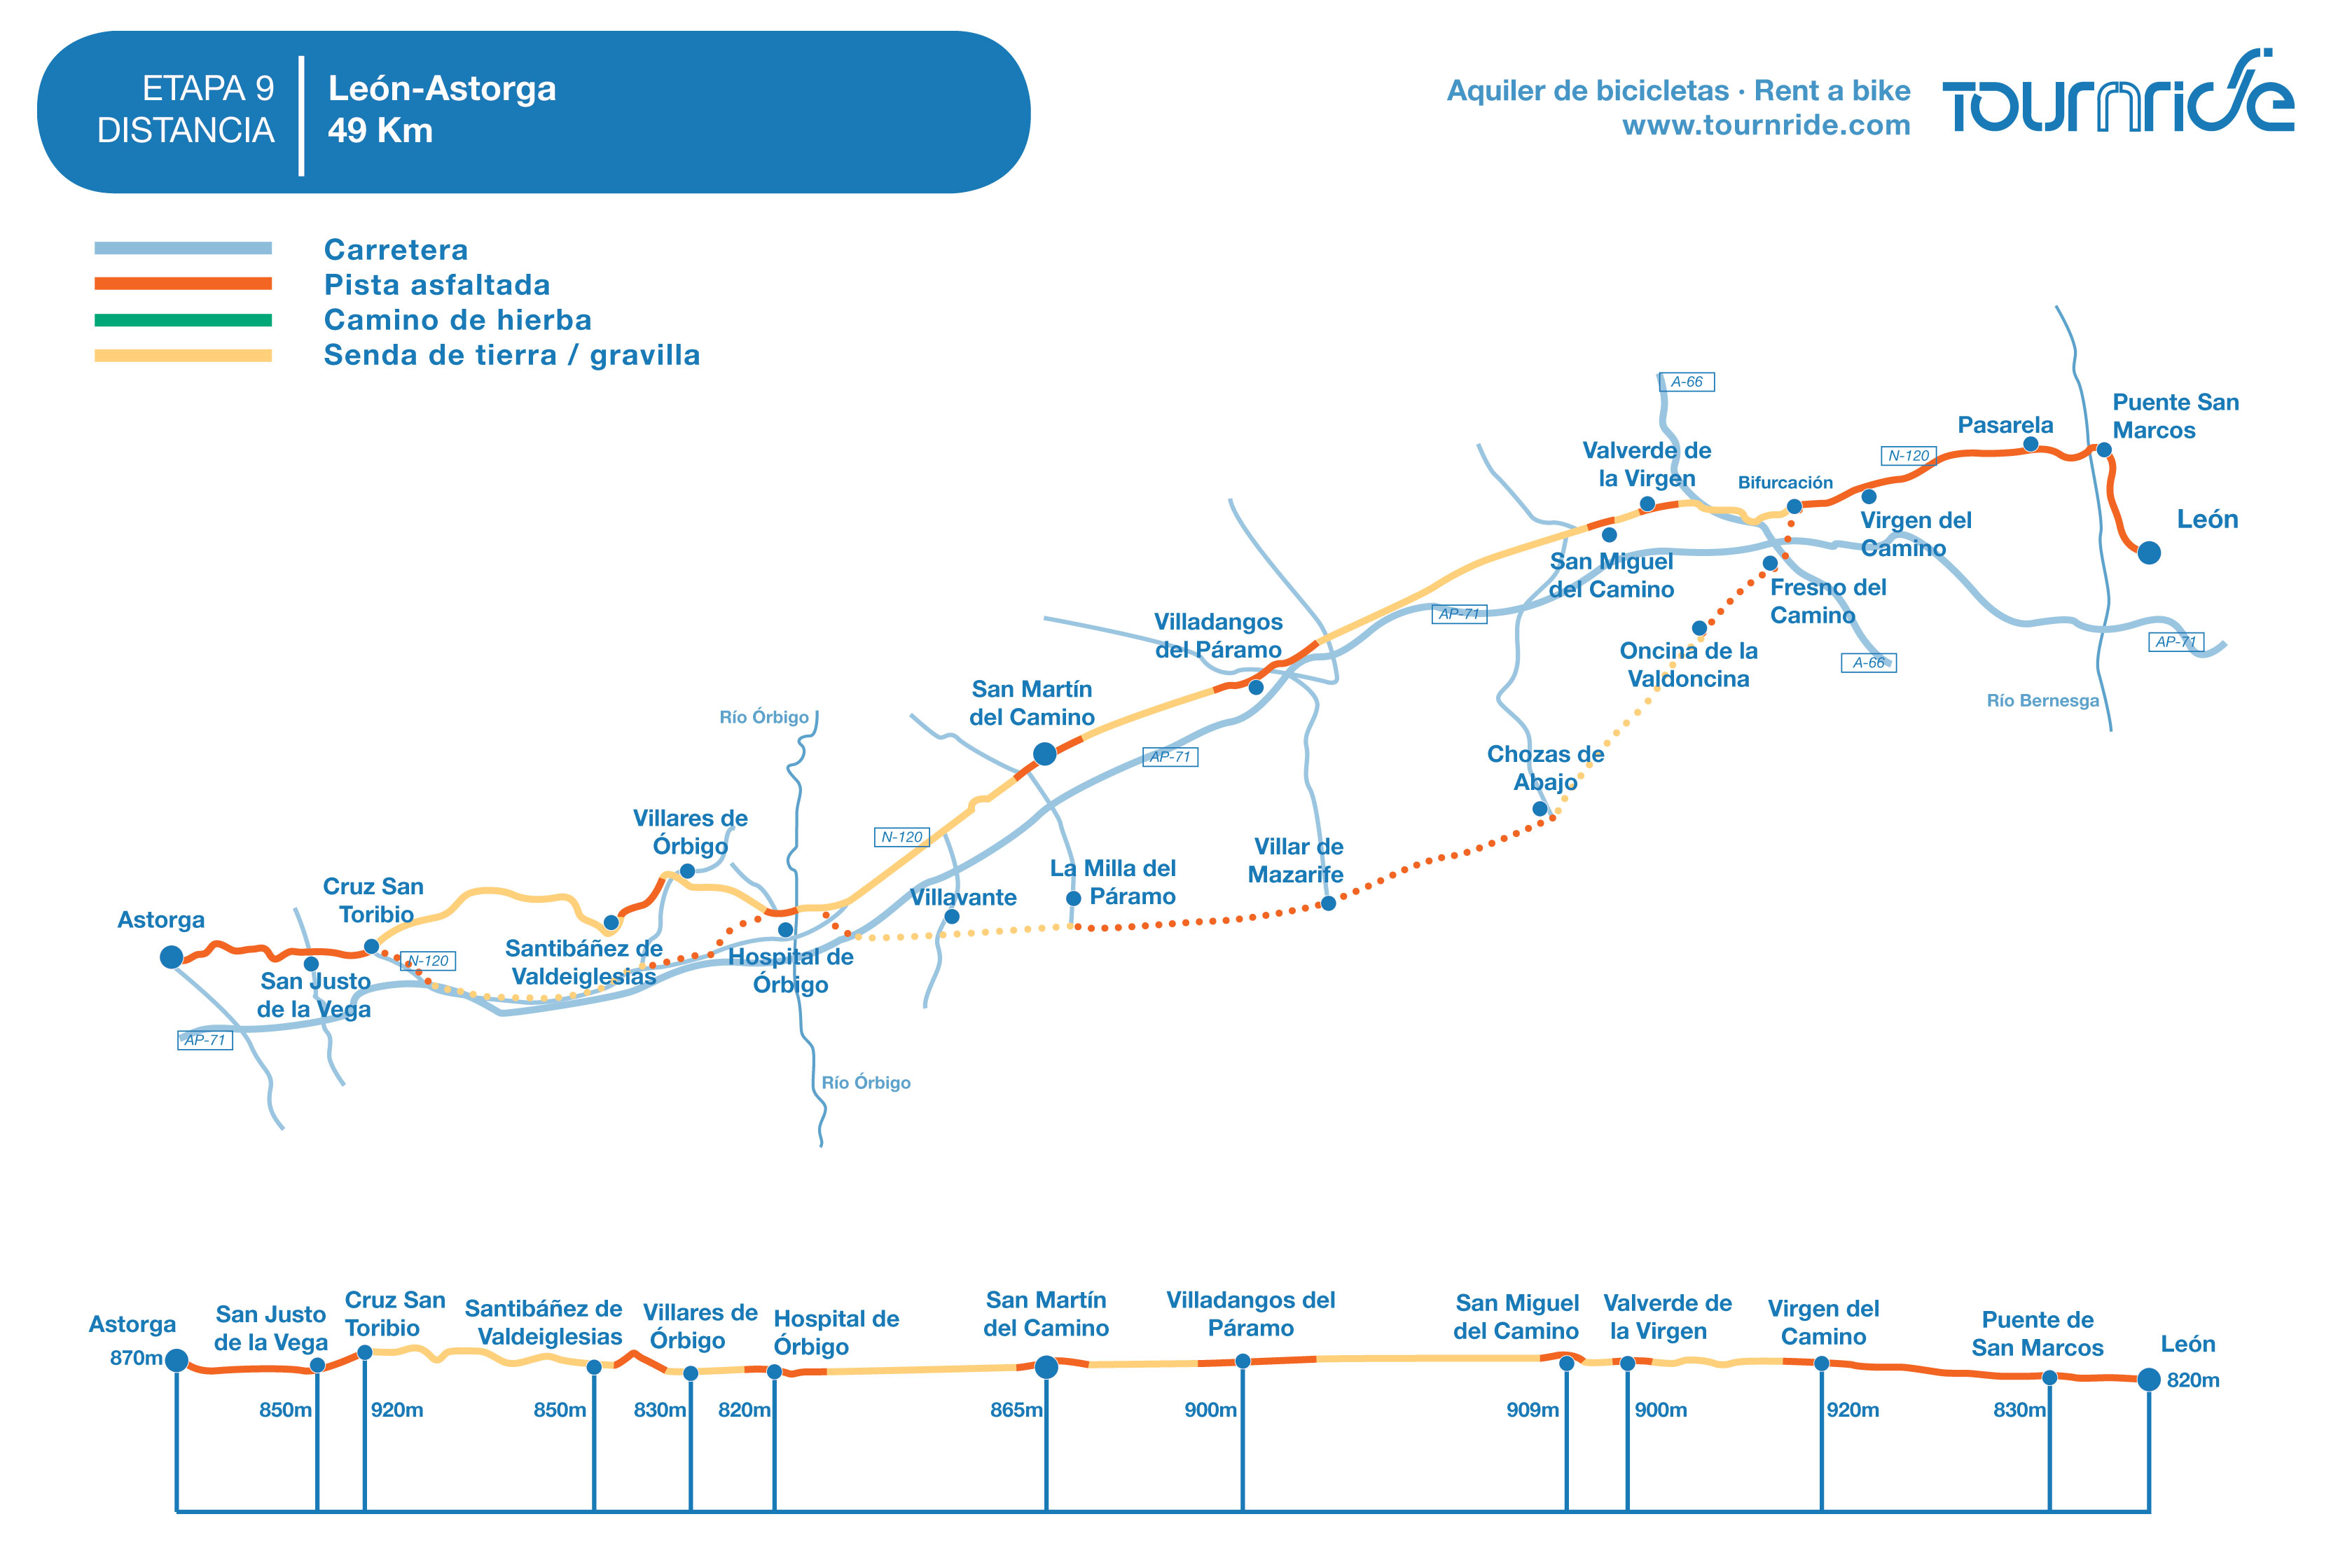 Mapa de la etapa 9 del camino de santiago en bici desde León a Astorga